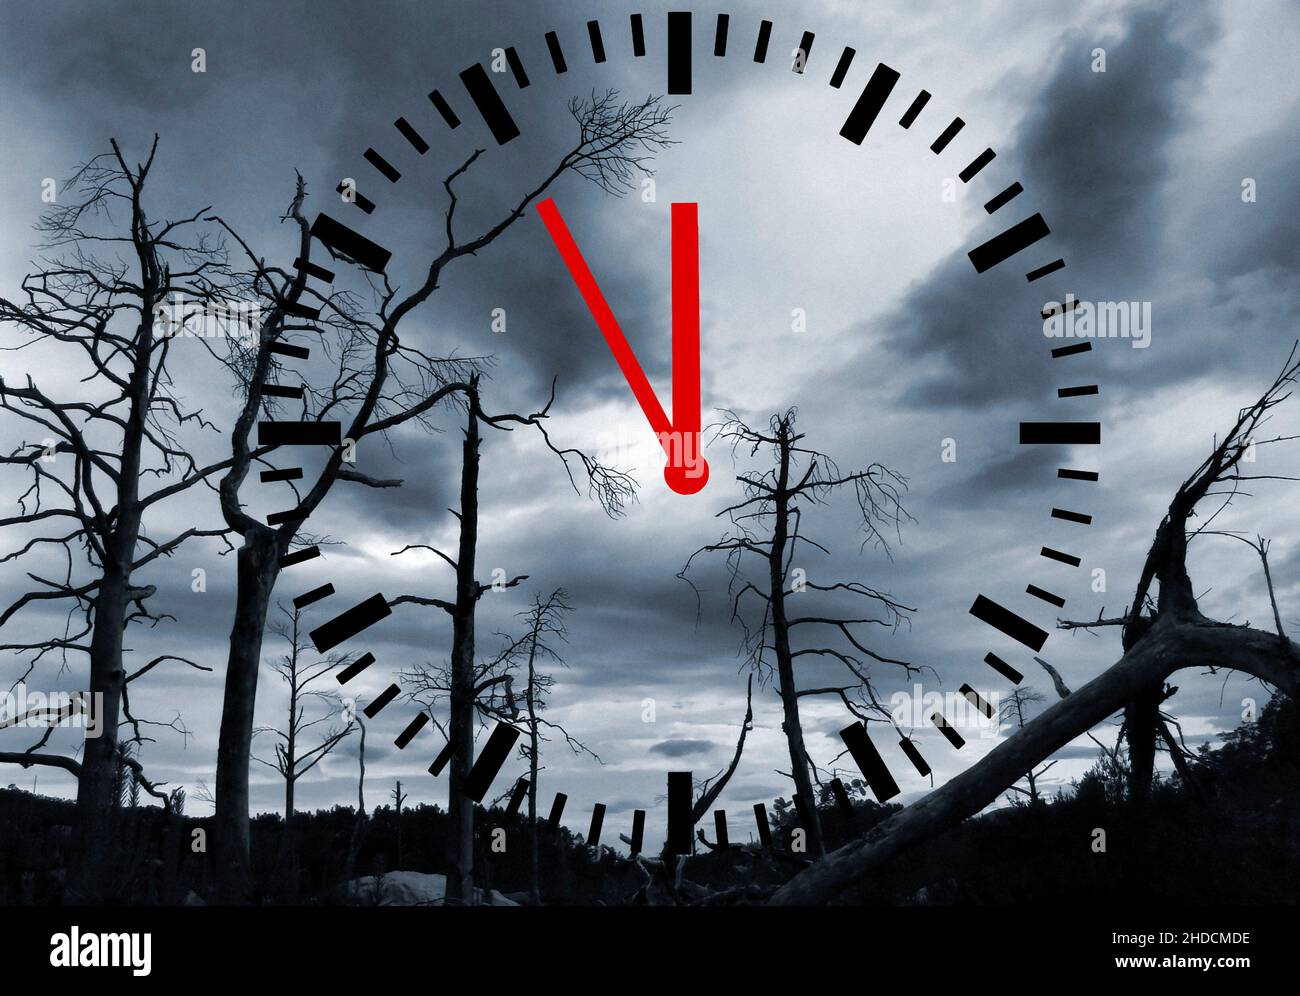 Toter Wald durch Umweltverschmutzung, Uhr zeigt 5 vor 12, Stock Photo